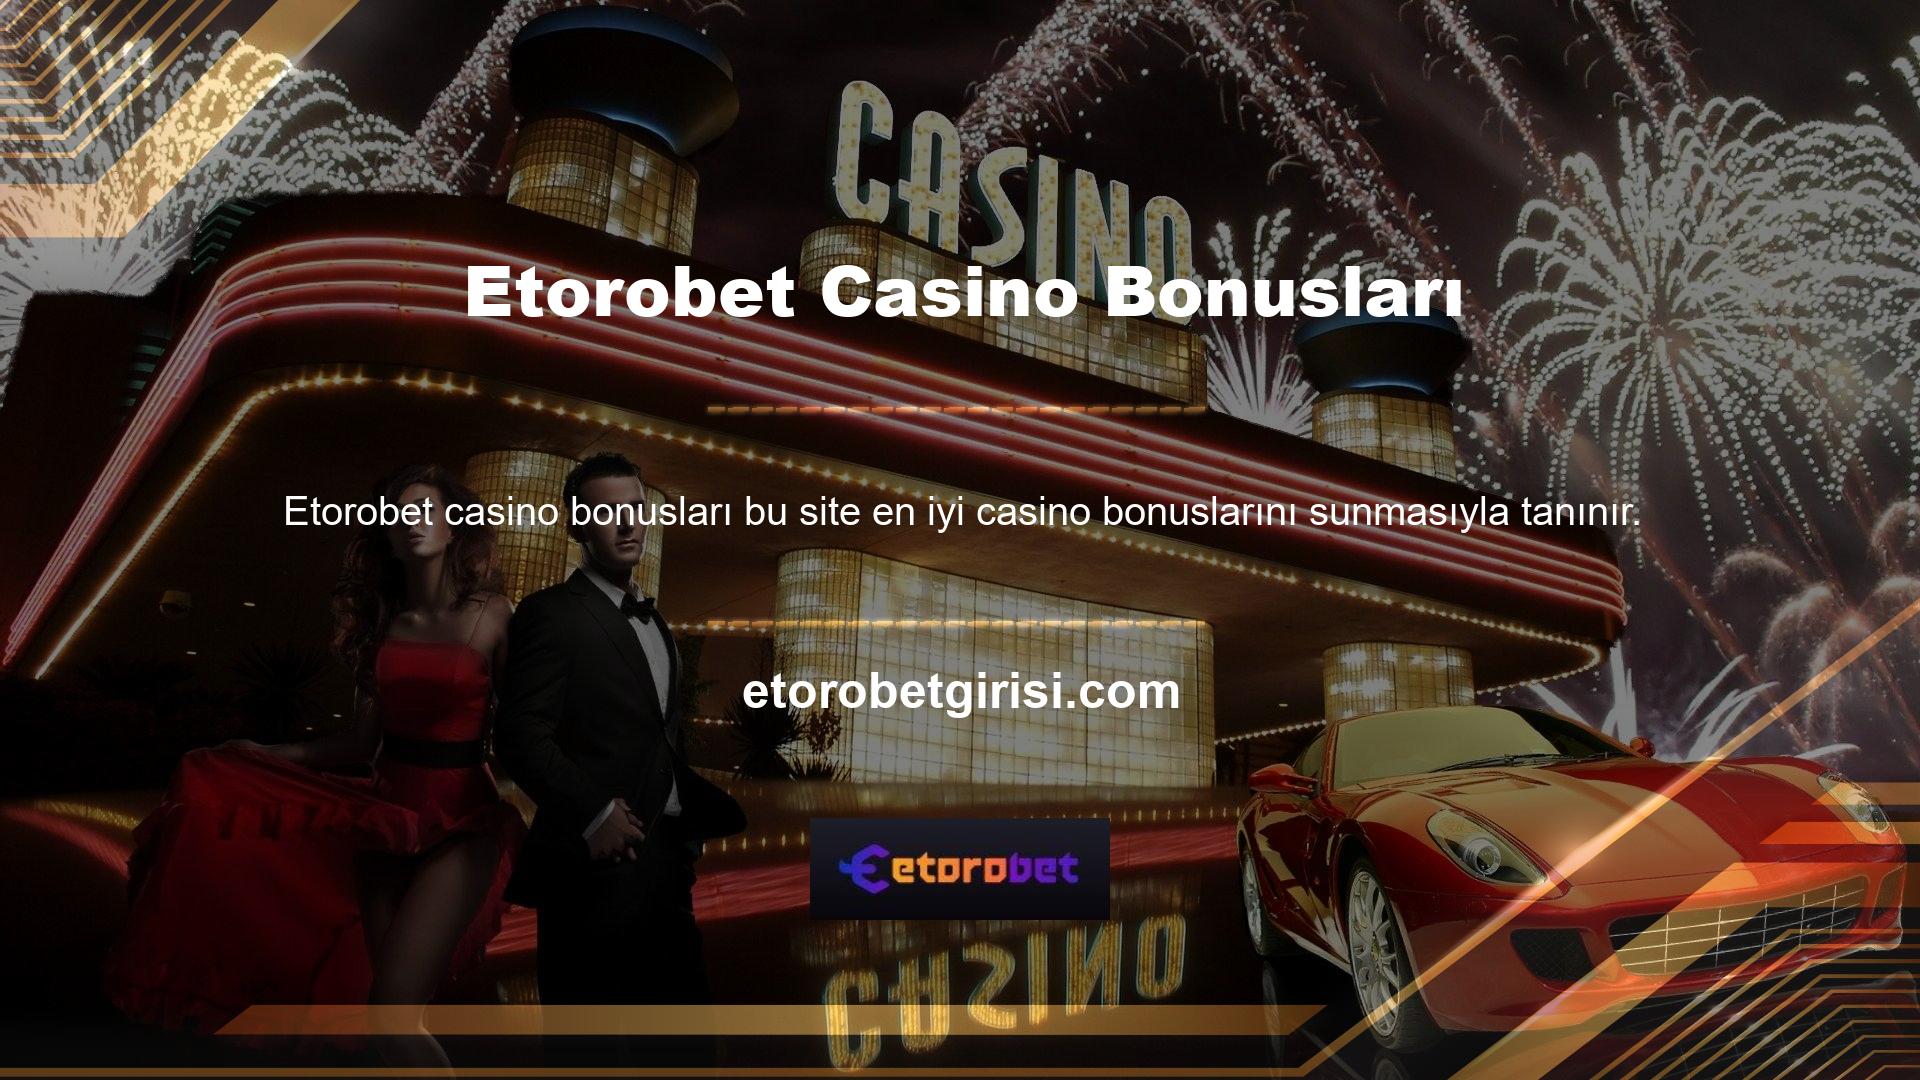 Etorobet casino bonus kampanyası iki kata kadar kazanmanızı sağlayacak